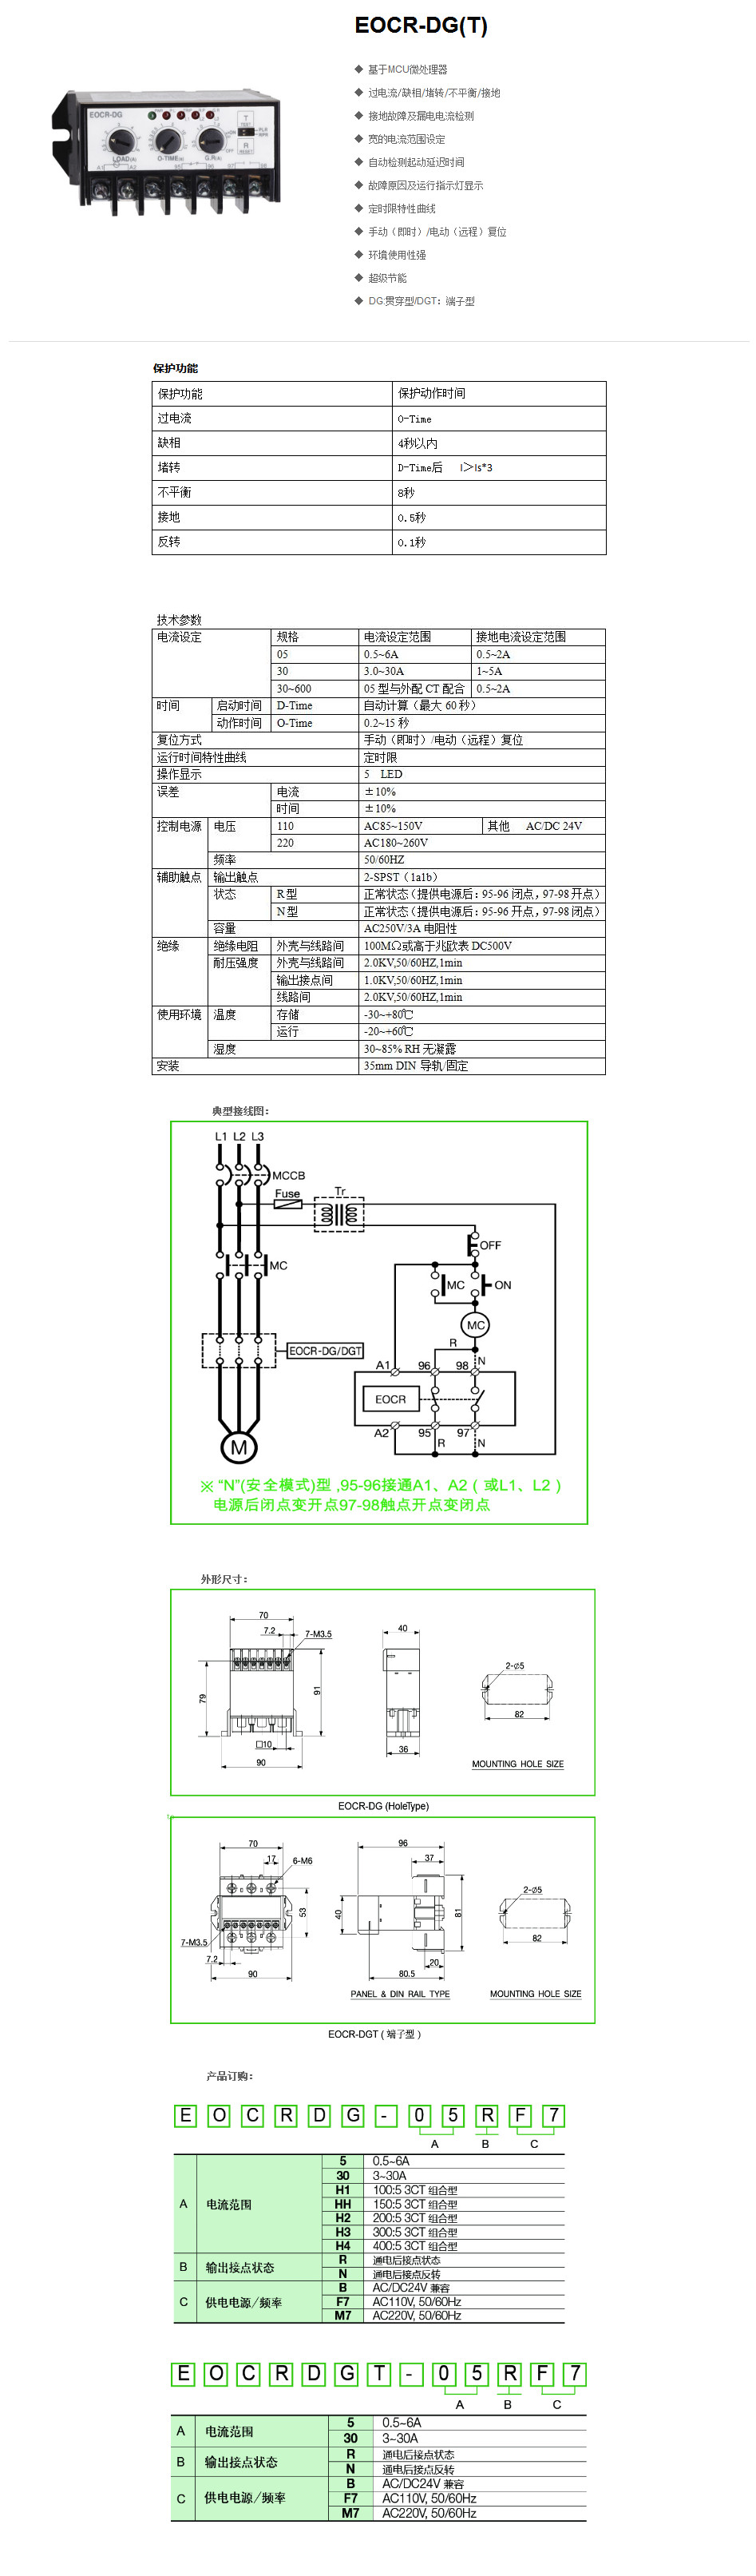 施耐德EOCR（原韩国三和）DG电子式过电流继电器 一级代理 EOCRDG,DG,EOCR-DG,电子继电器,电机保护器